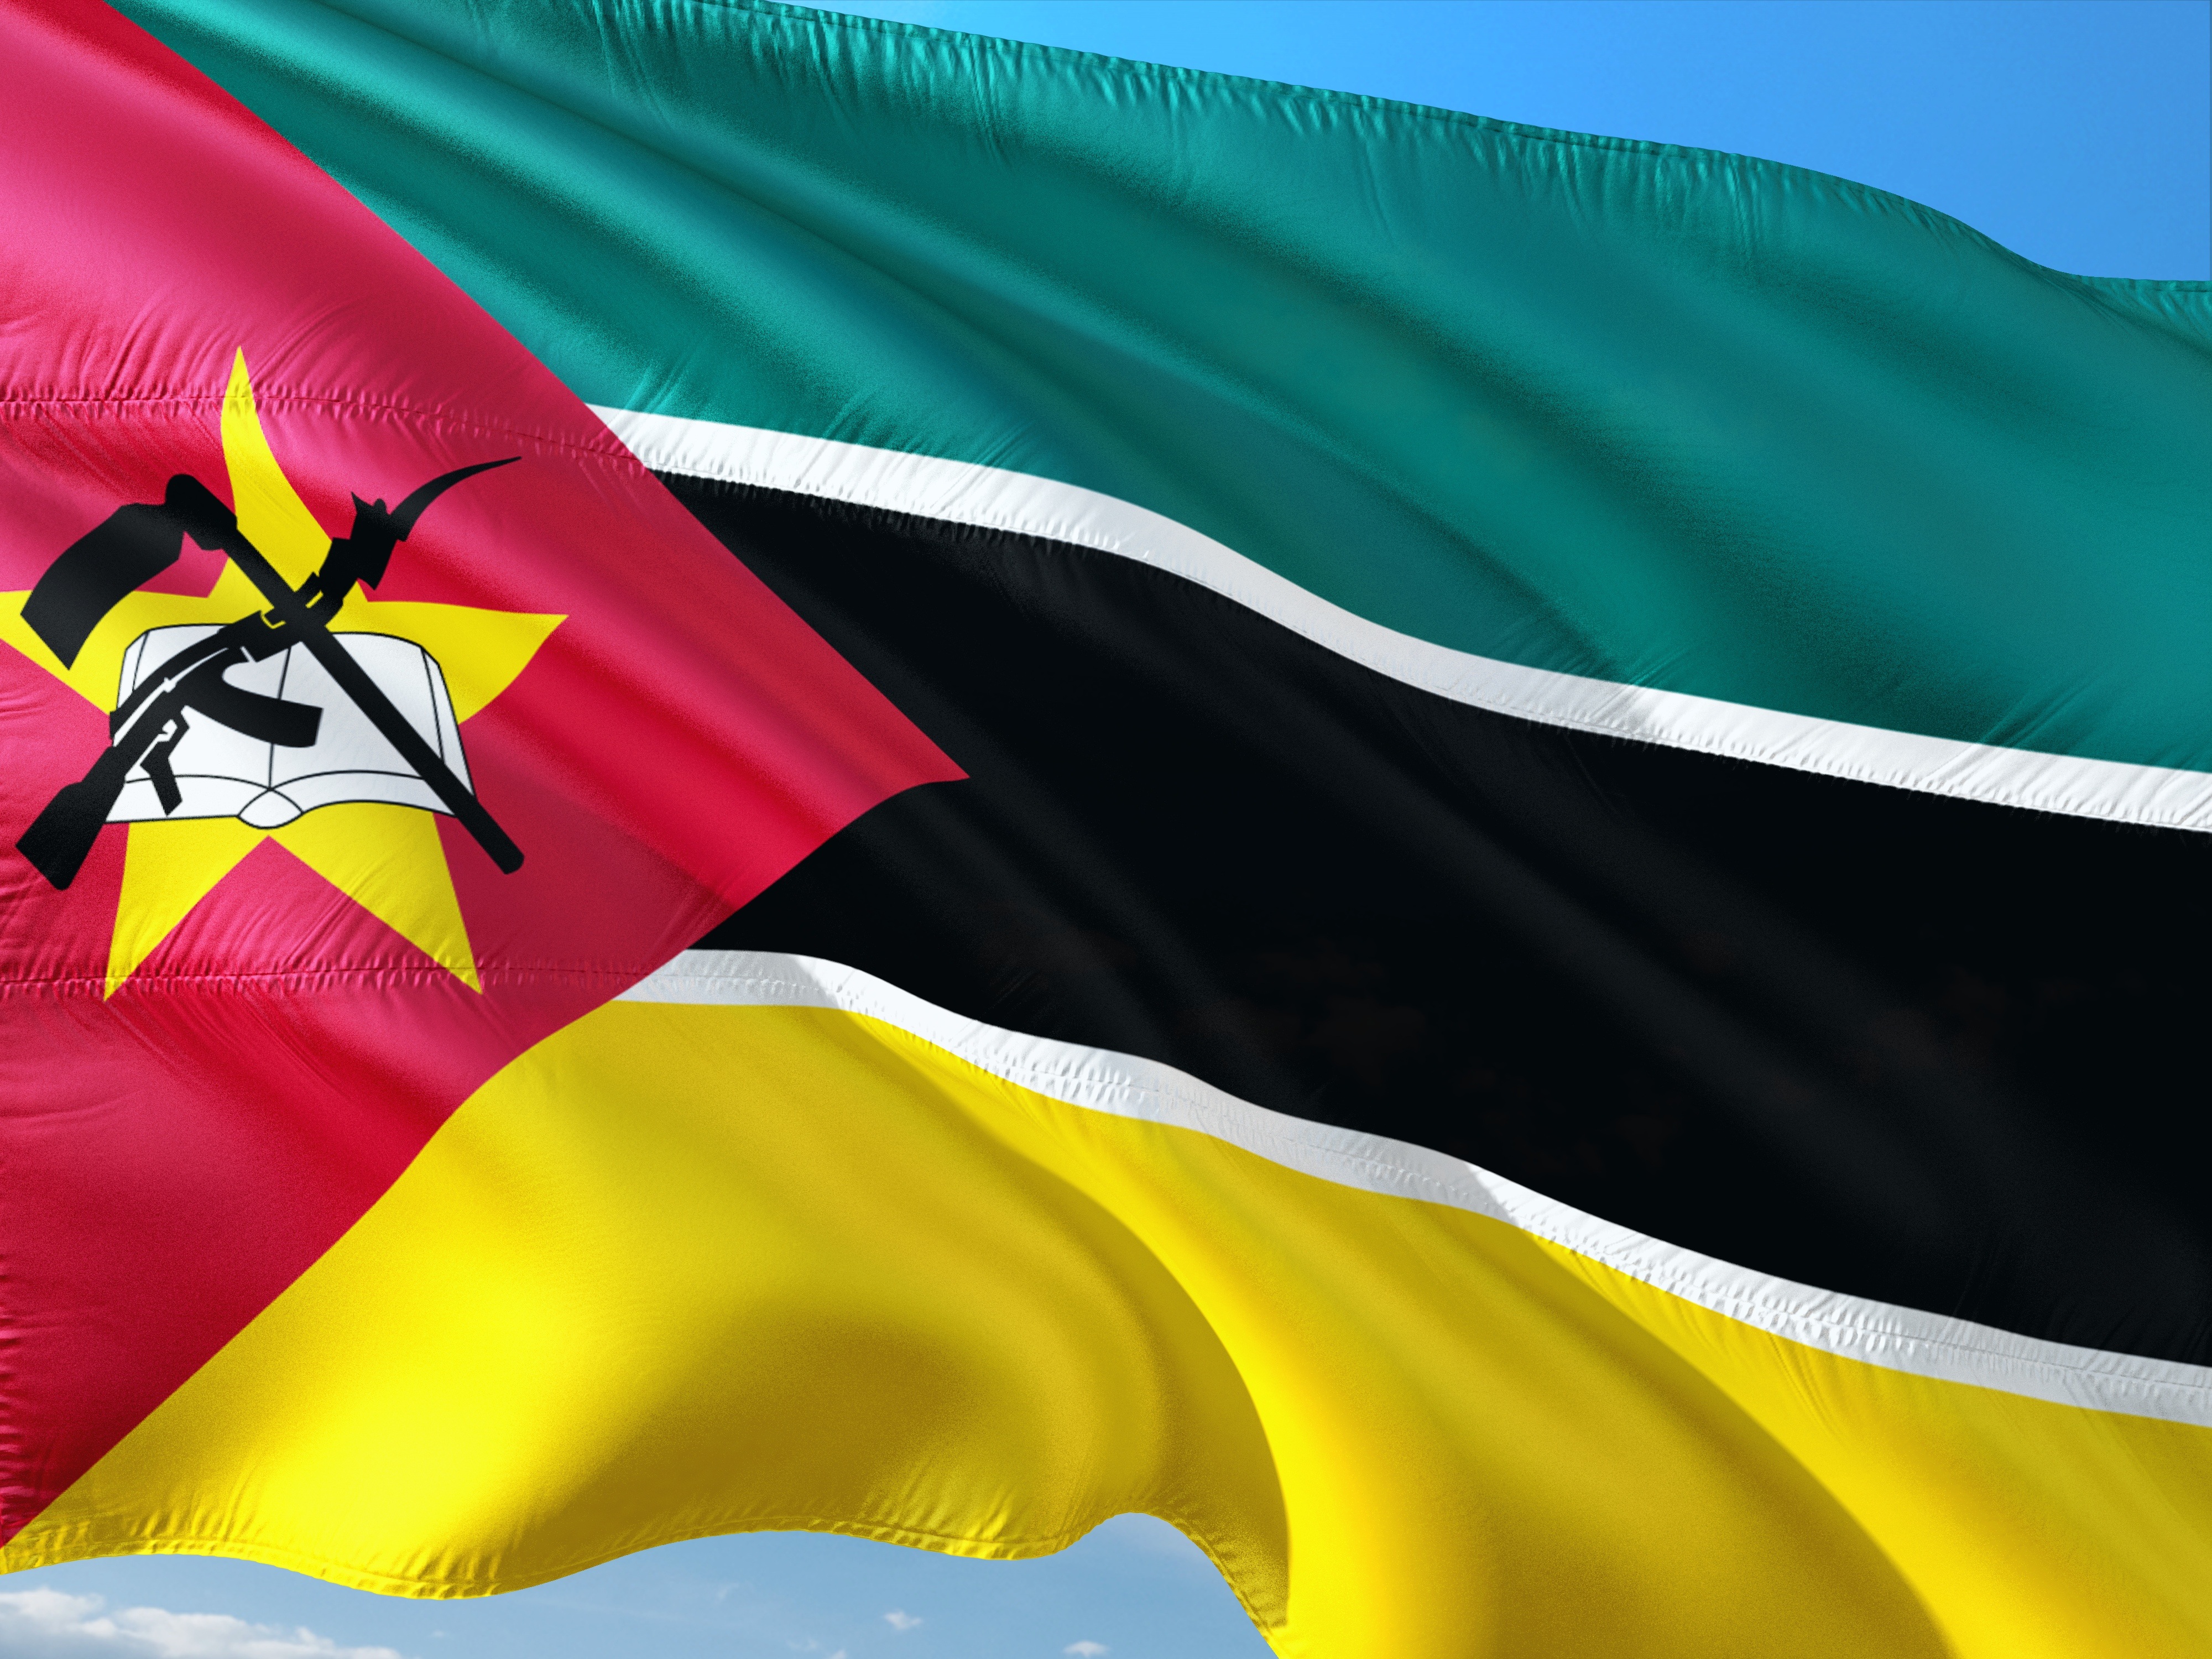 英国とノルウェーの政府、モザンビークの太陽光とエネルギー貯蔵プロジェクトを支援